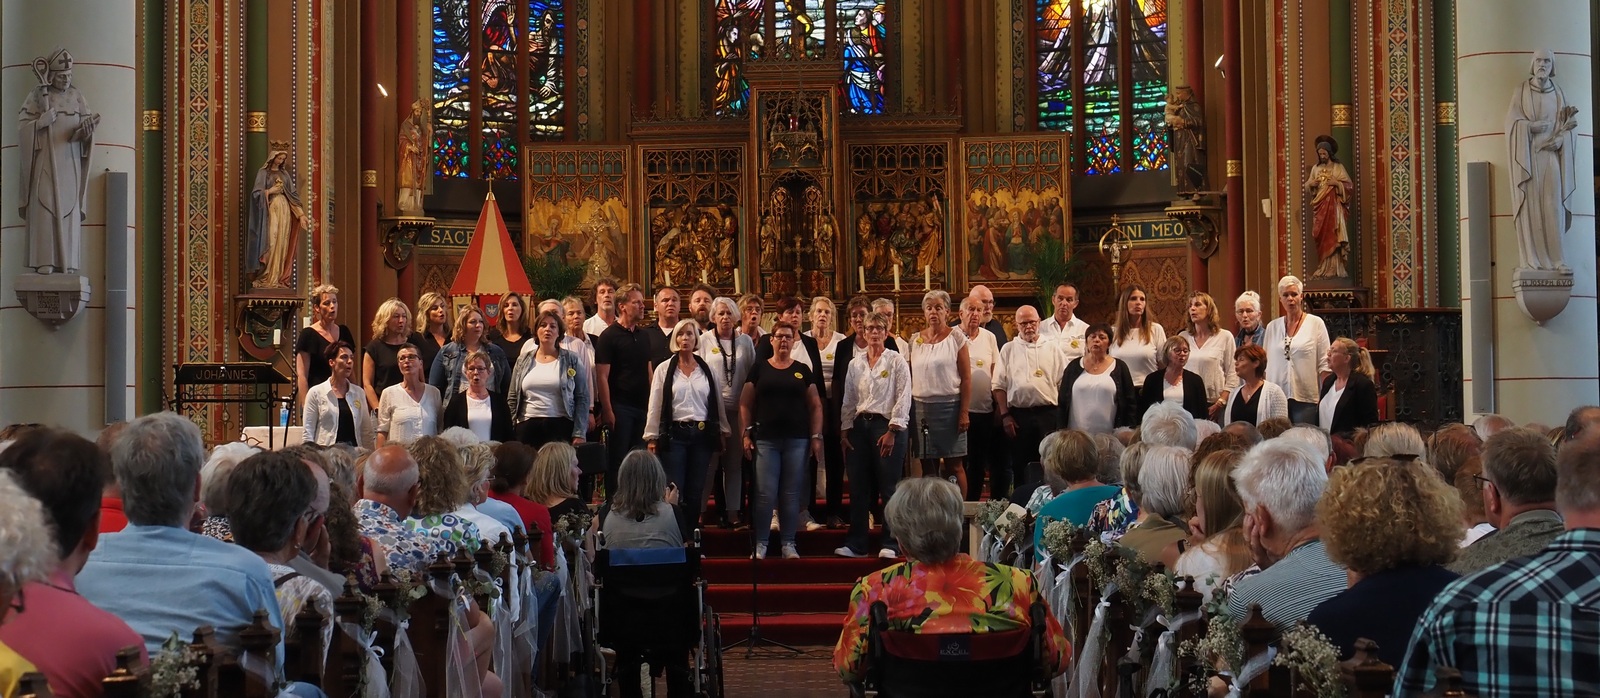 Euphonion Singers 50 jaar: viering met speciaal basiliekconcert